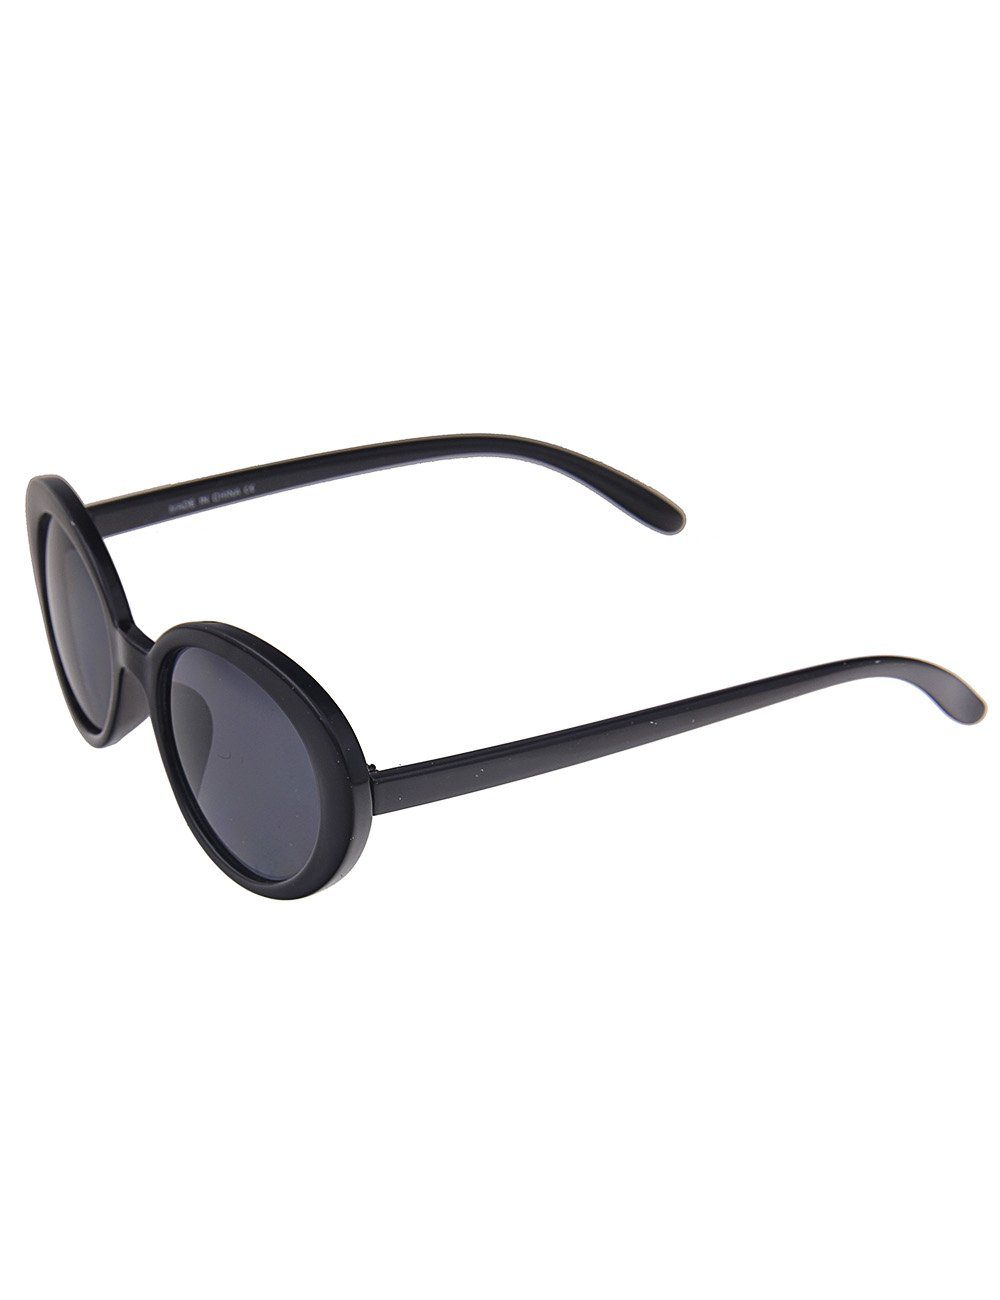 Sonnenbrille leslii Gläsern mit ovalen Retro